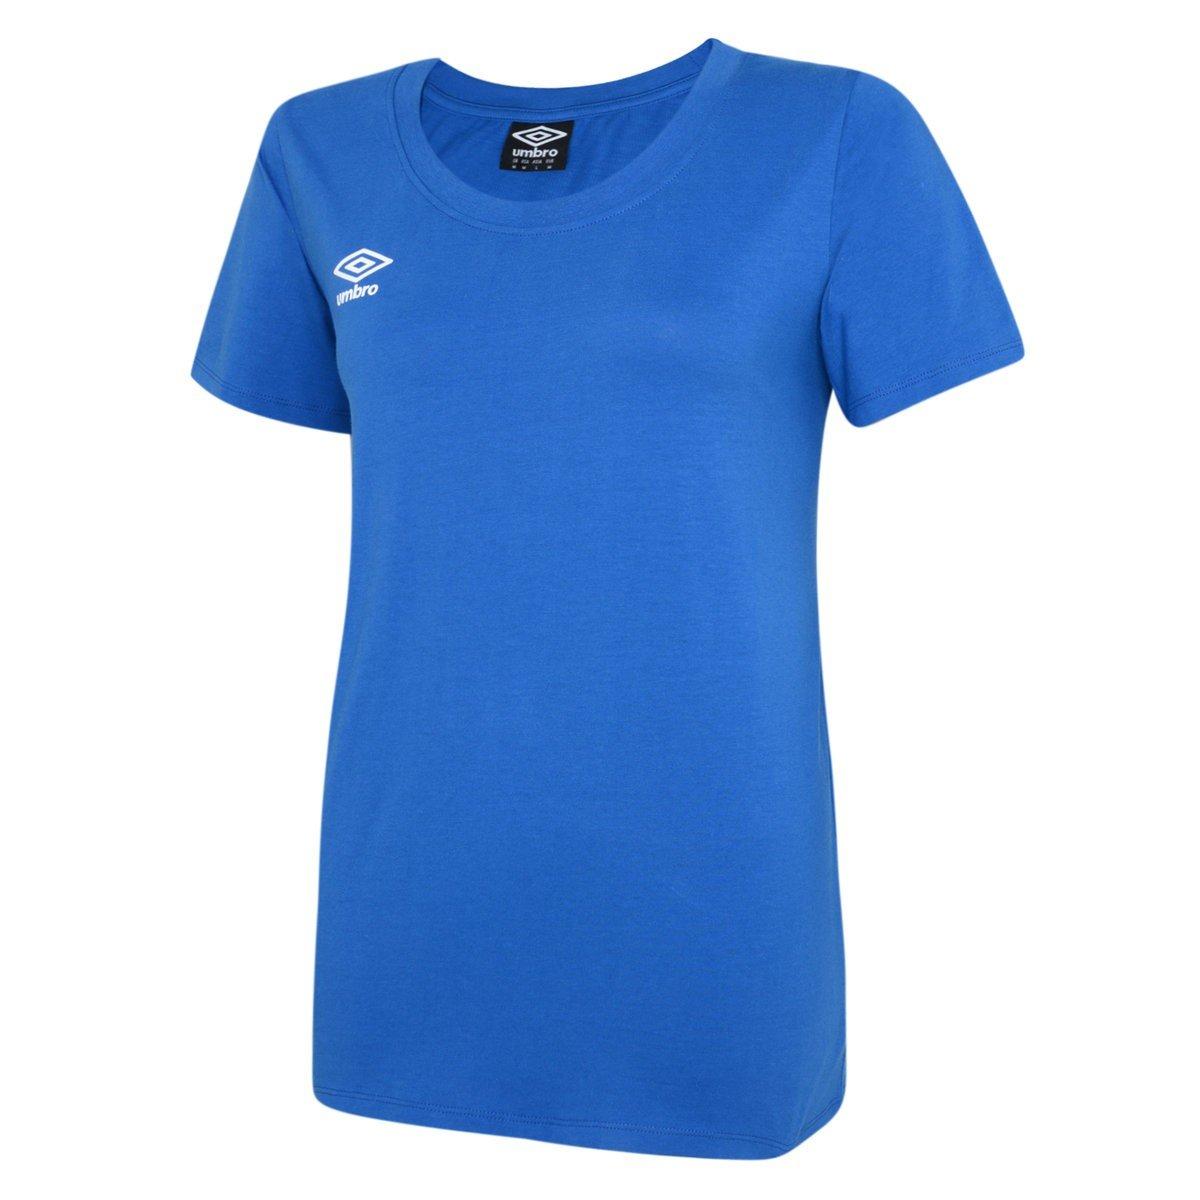 Club Leisure Tshirt Damen Blau XL von Umbro